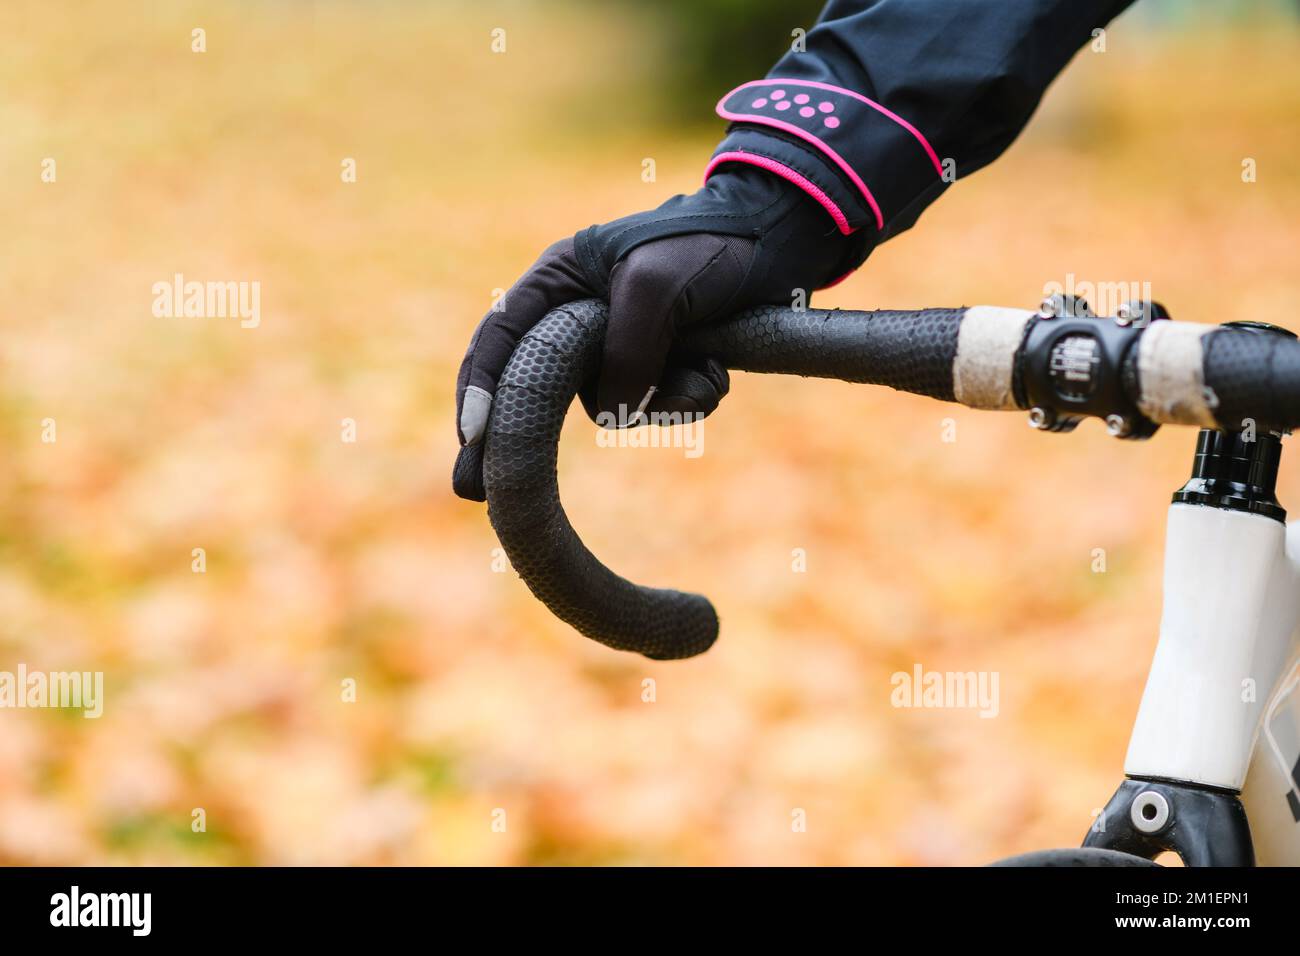 Männliche Hand im Handschuh am Fahrradlenker Stockfoto